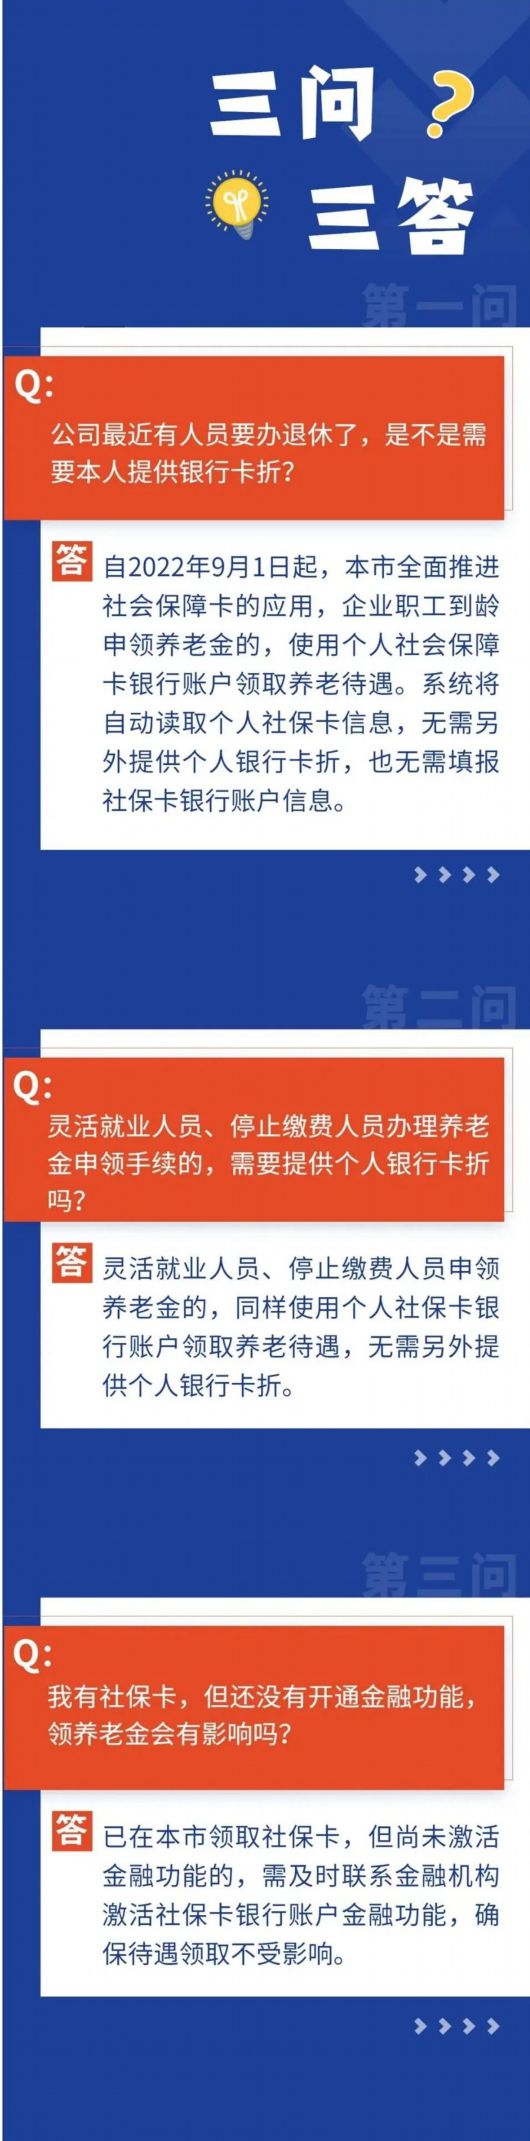 社保卡领取养老金三问三答-ManBetX注册登录·(中国)